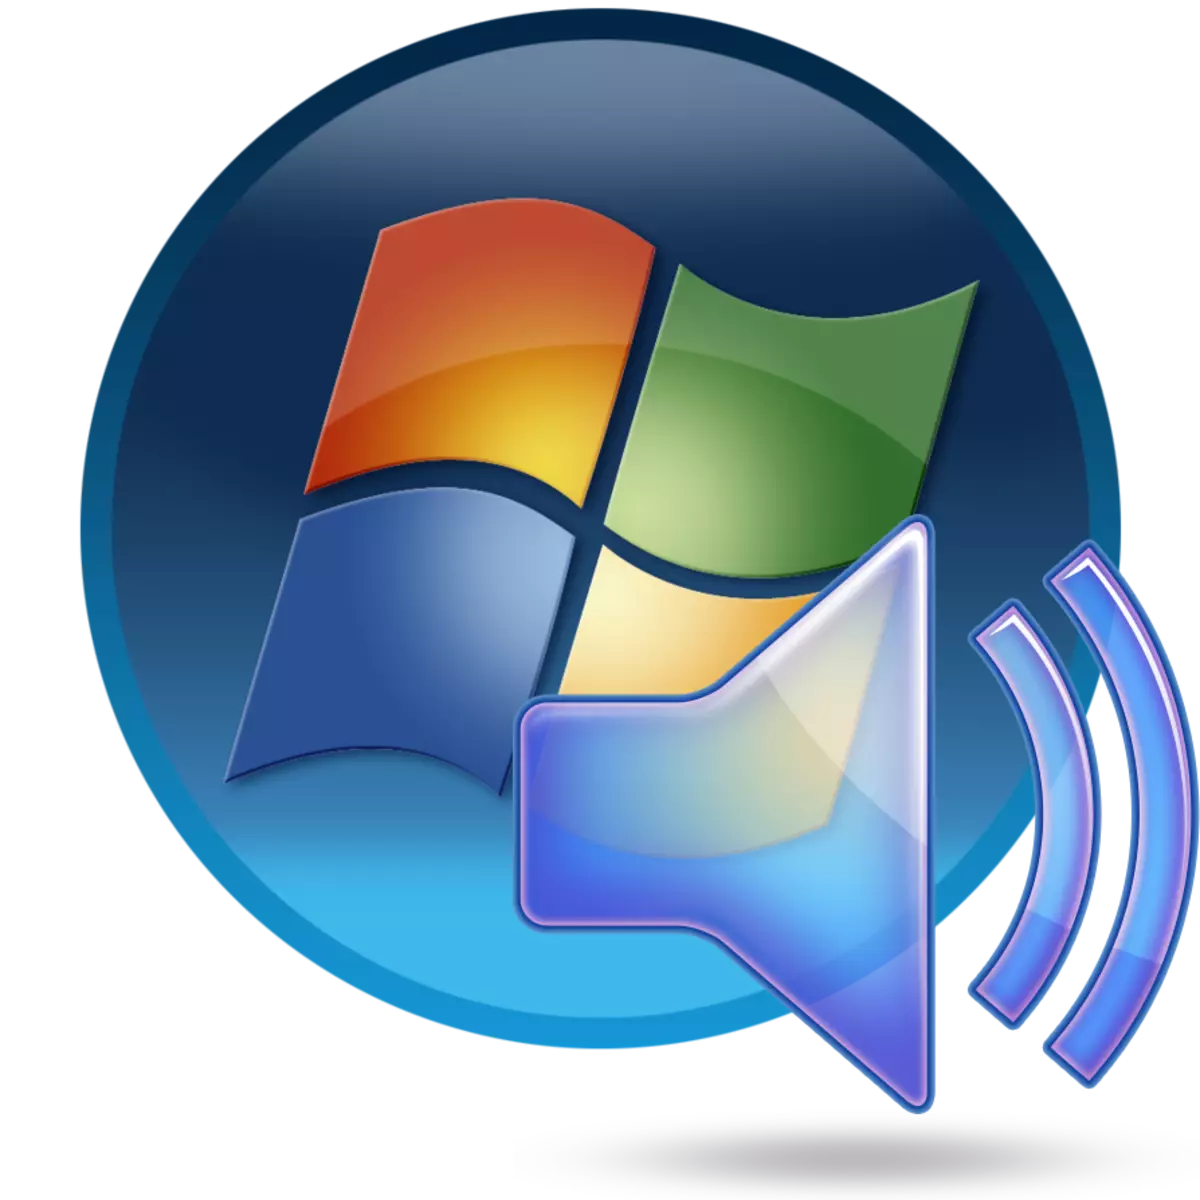 Windows 7 နှင့်အတူကွန်ပျူတာပေါ်တွင်အသံကိရိယာတစ်ခုကို install လုပ်ခြင်း